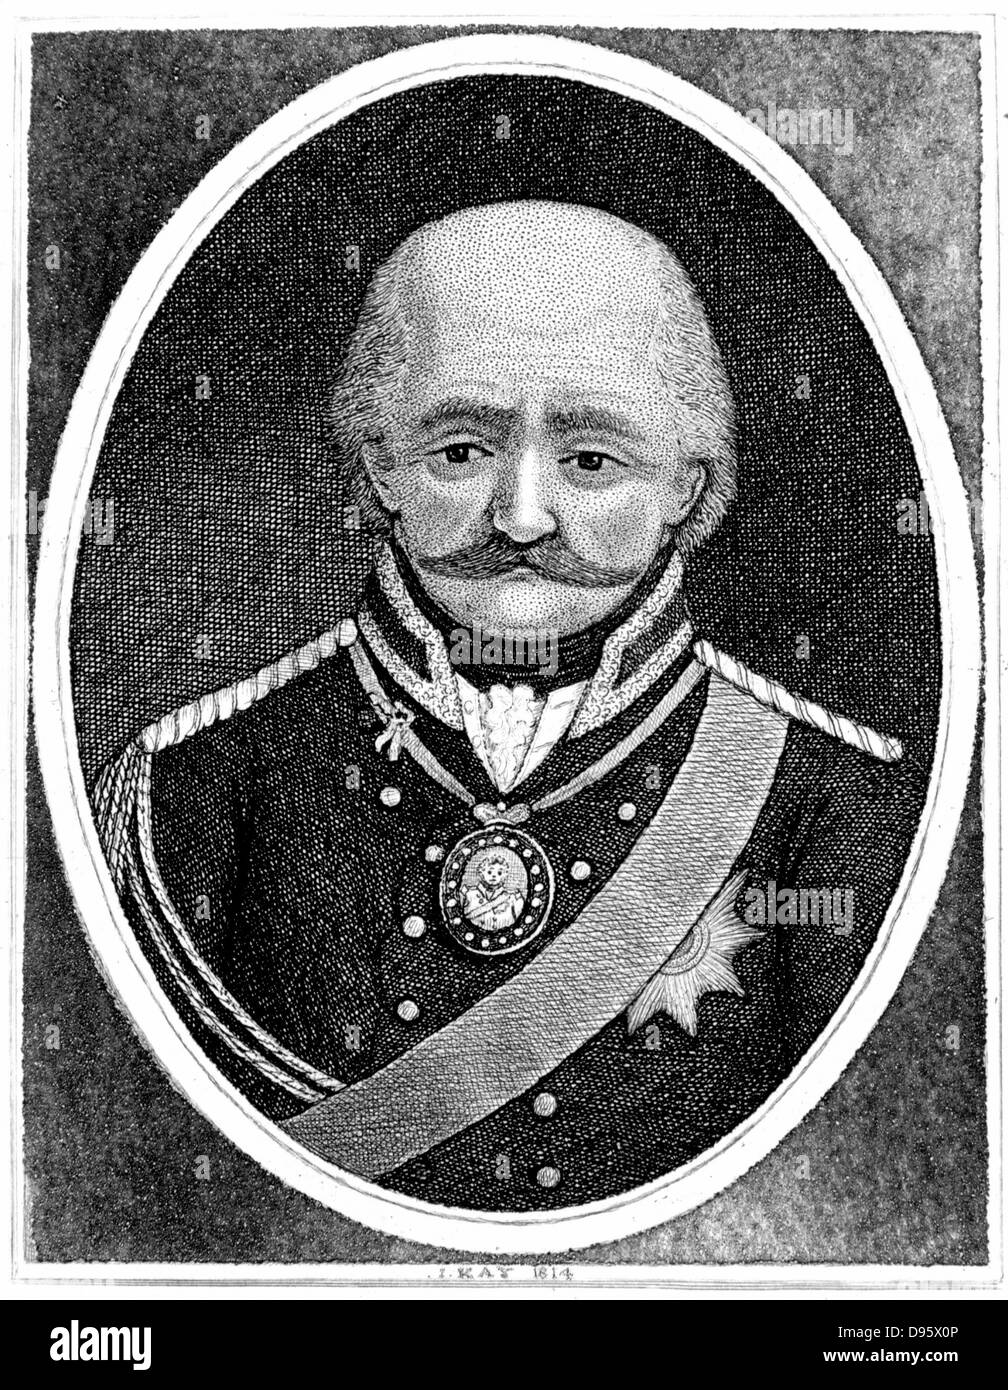 Leberech Gebbard Von Blucher (1742-1819) général prussien. Contribution importante à la victoire de Wellington à Waterloo. Gravure par John Kay, 1814 Banque D'Images